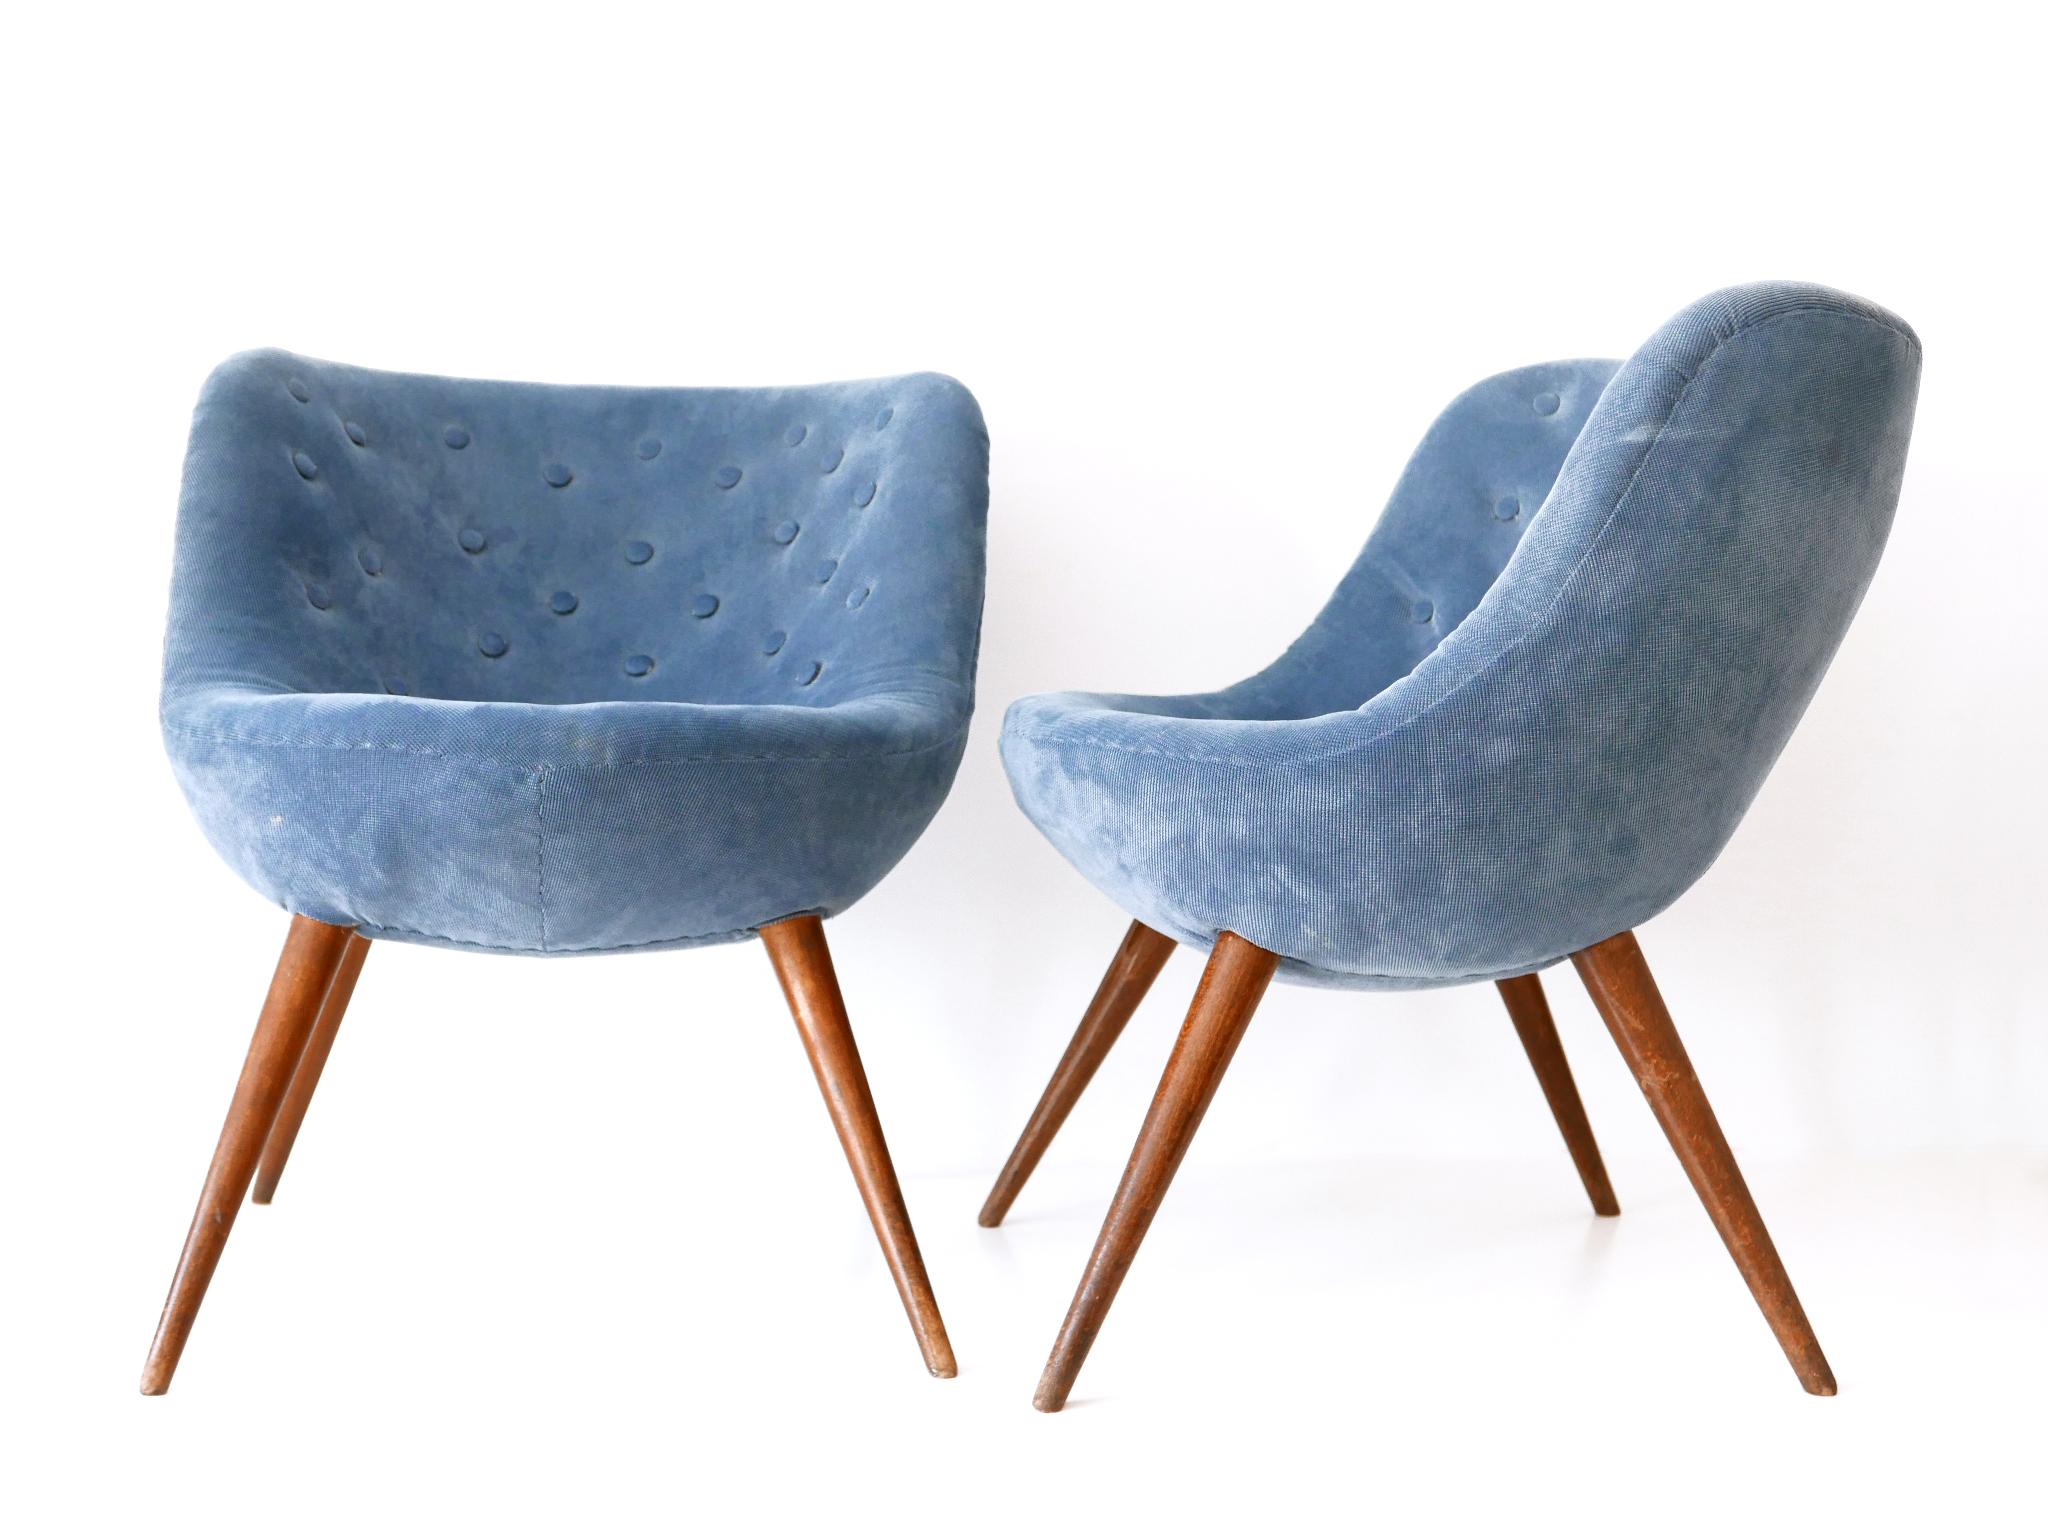 Satz von zwei extrem seltenen und schönen Mid-Century Modern Lounge Sesseln. Entworfen von Fritz Neth (zugeschrieben) für Correcta, Deutschland, 1950er Jahre.

Die Stühle wurden vom Vorbesitzer neu gepolstert.
Es bleibt dem Käufer überlassen, ob